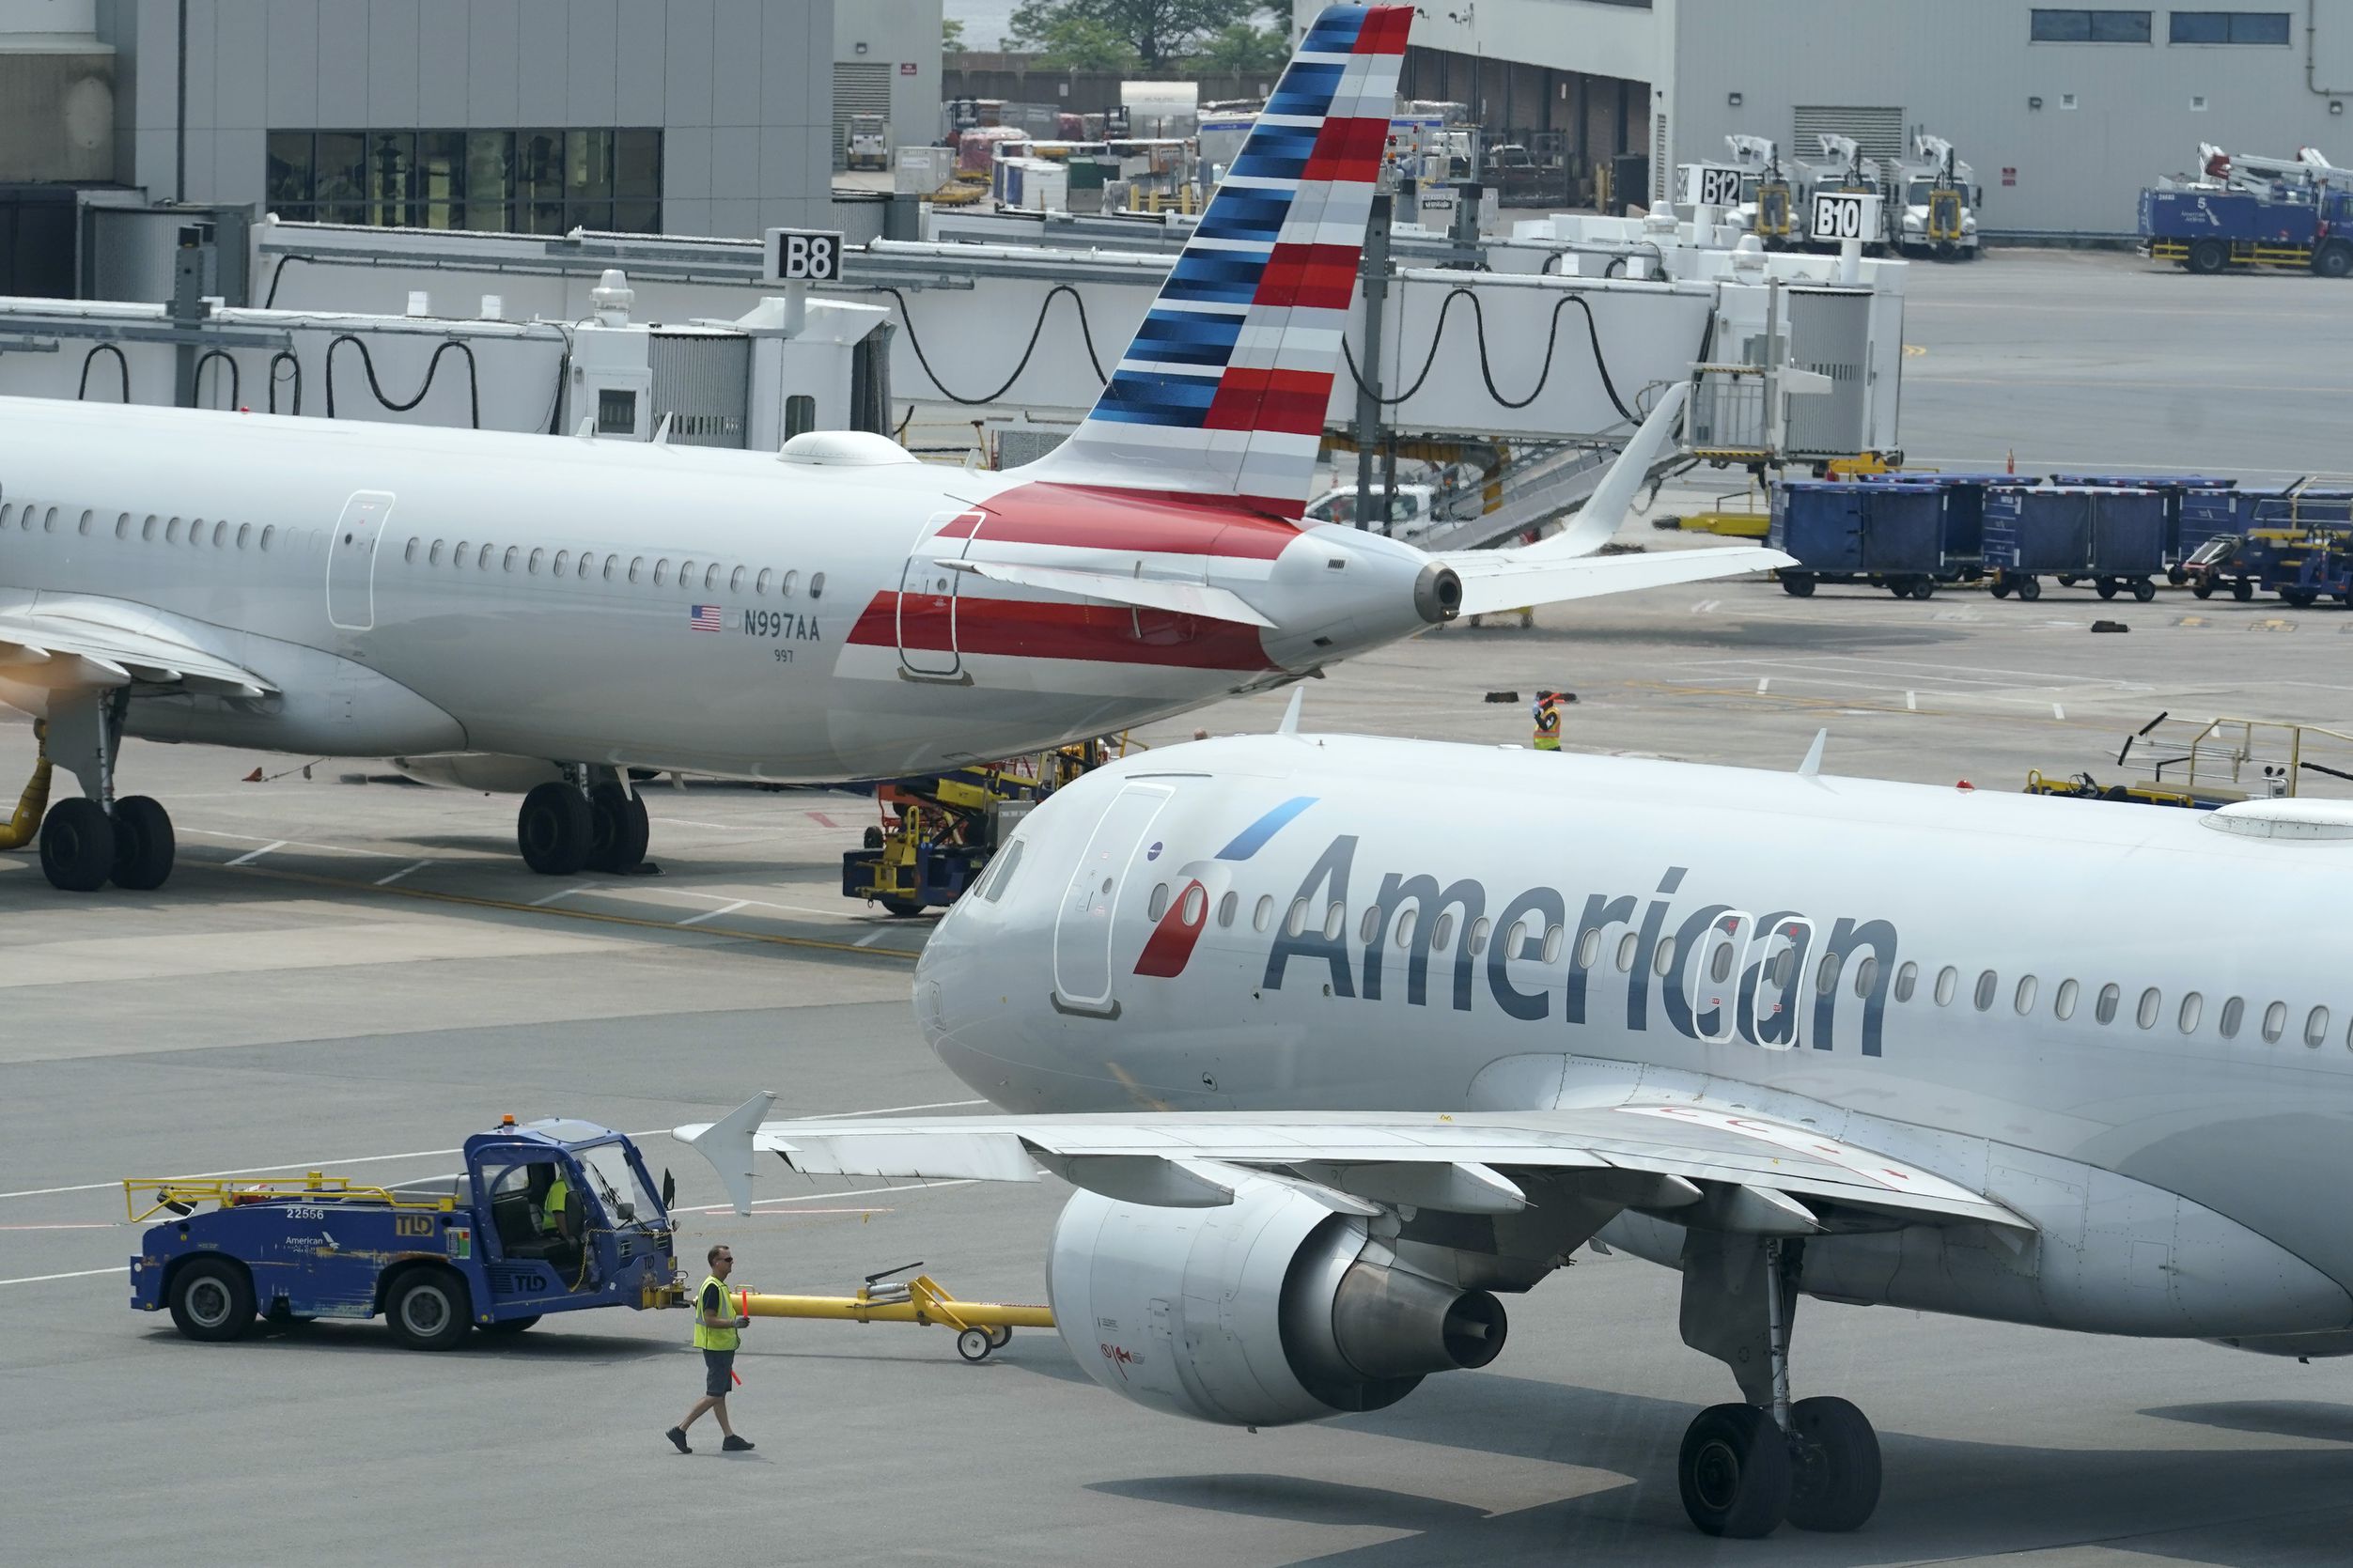 American Airlines subió costo de maleta extra en equipaje para viajar a Cuba